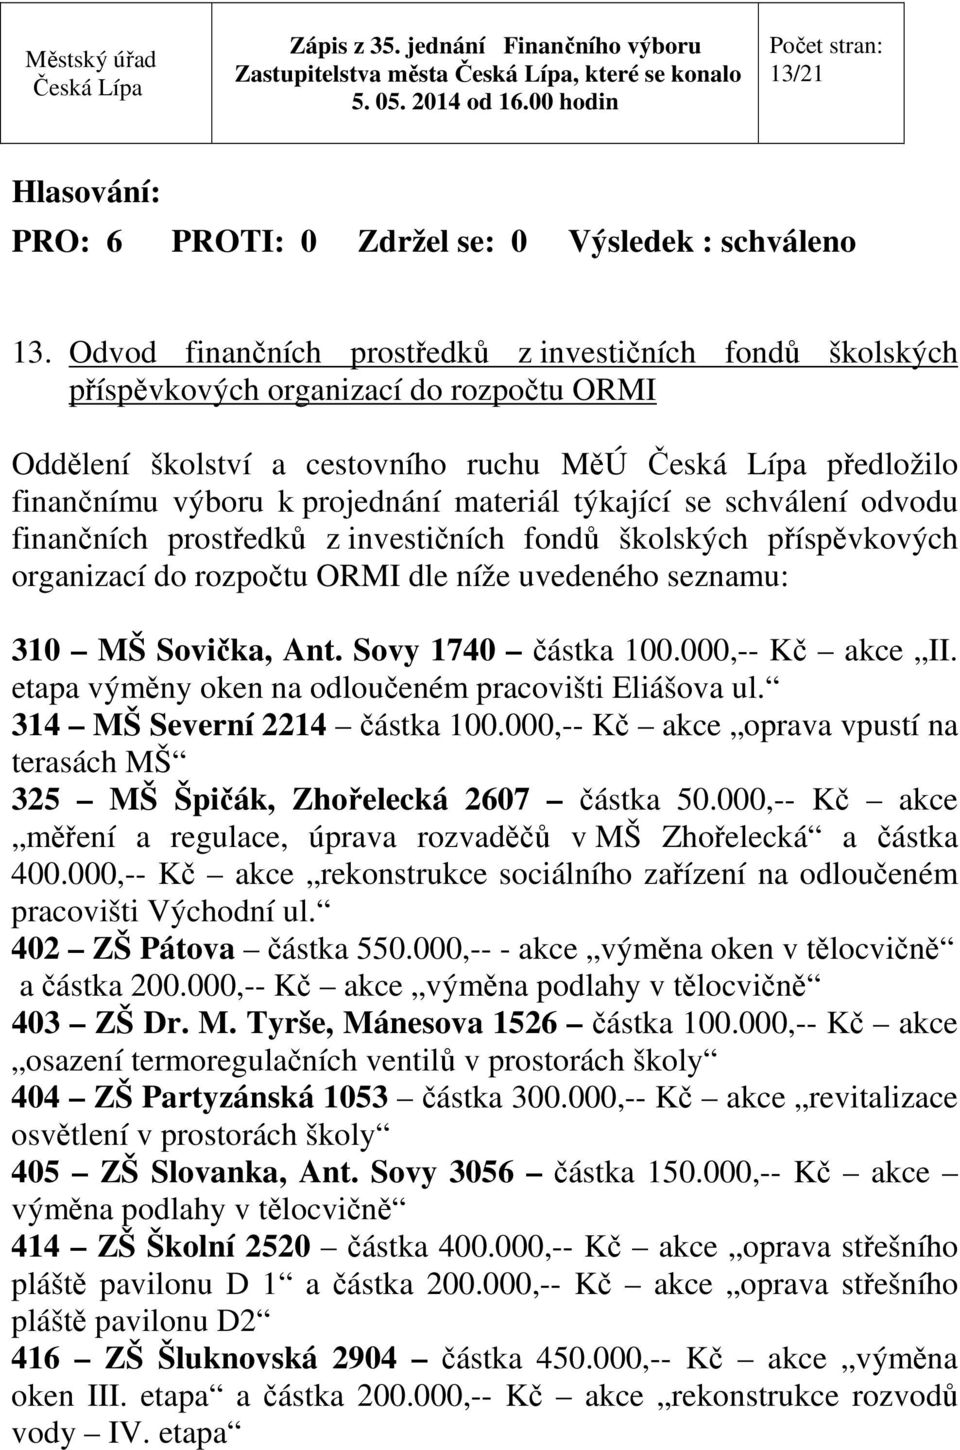 týkající se schválení odvodu finančních prostředků z investičních fondů školských příspěvkových organizací do rozpočtu ORMI dle níže uvedeného seznamu: 310 MŠ Sovička, Ant. Sovy 1740 částka 100.